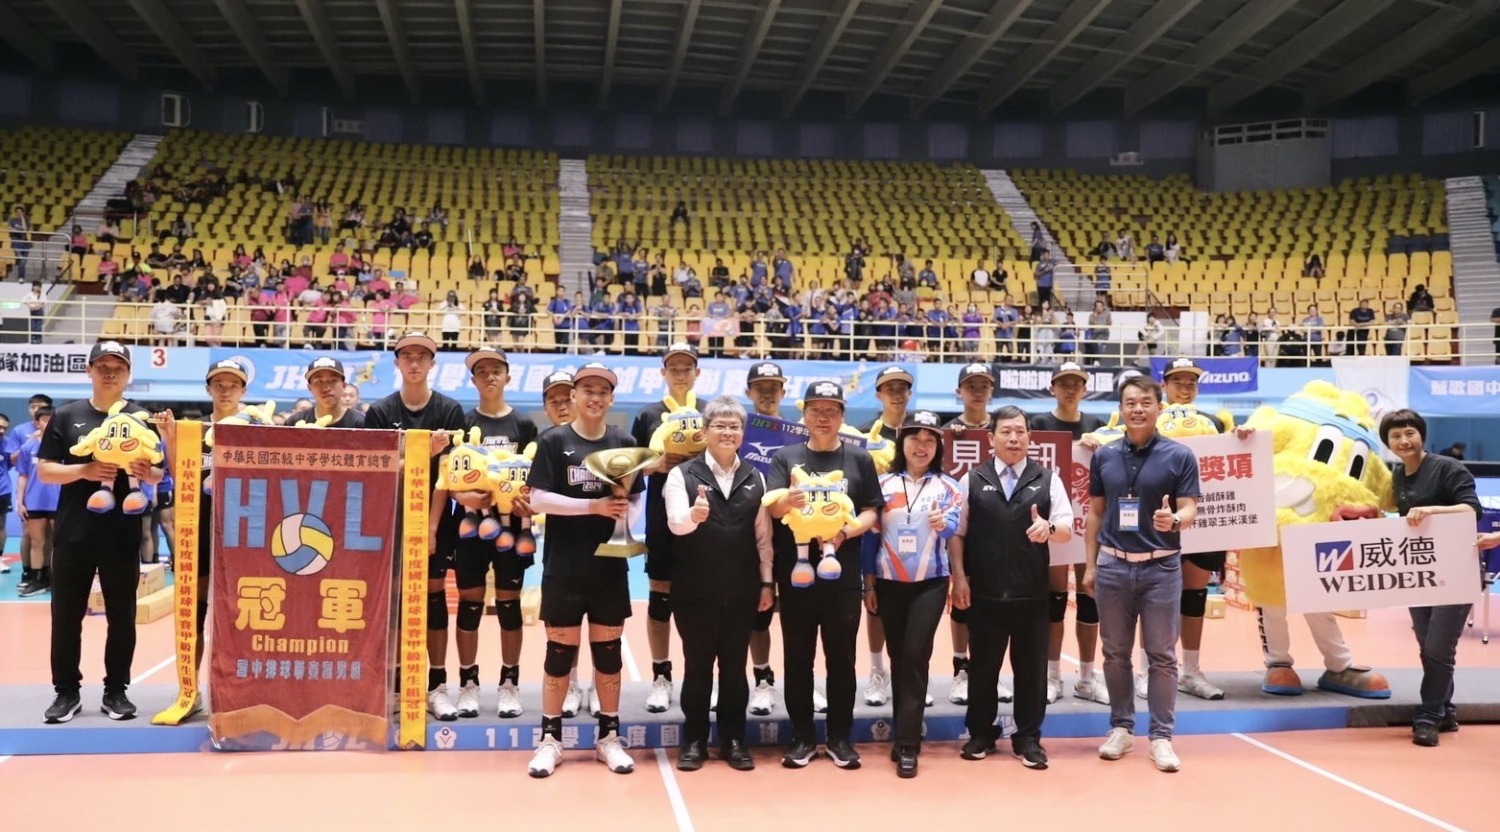 福誠高中國中部排球隊暌違11年再奪冠  獲高市教育局獎勵金30萬